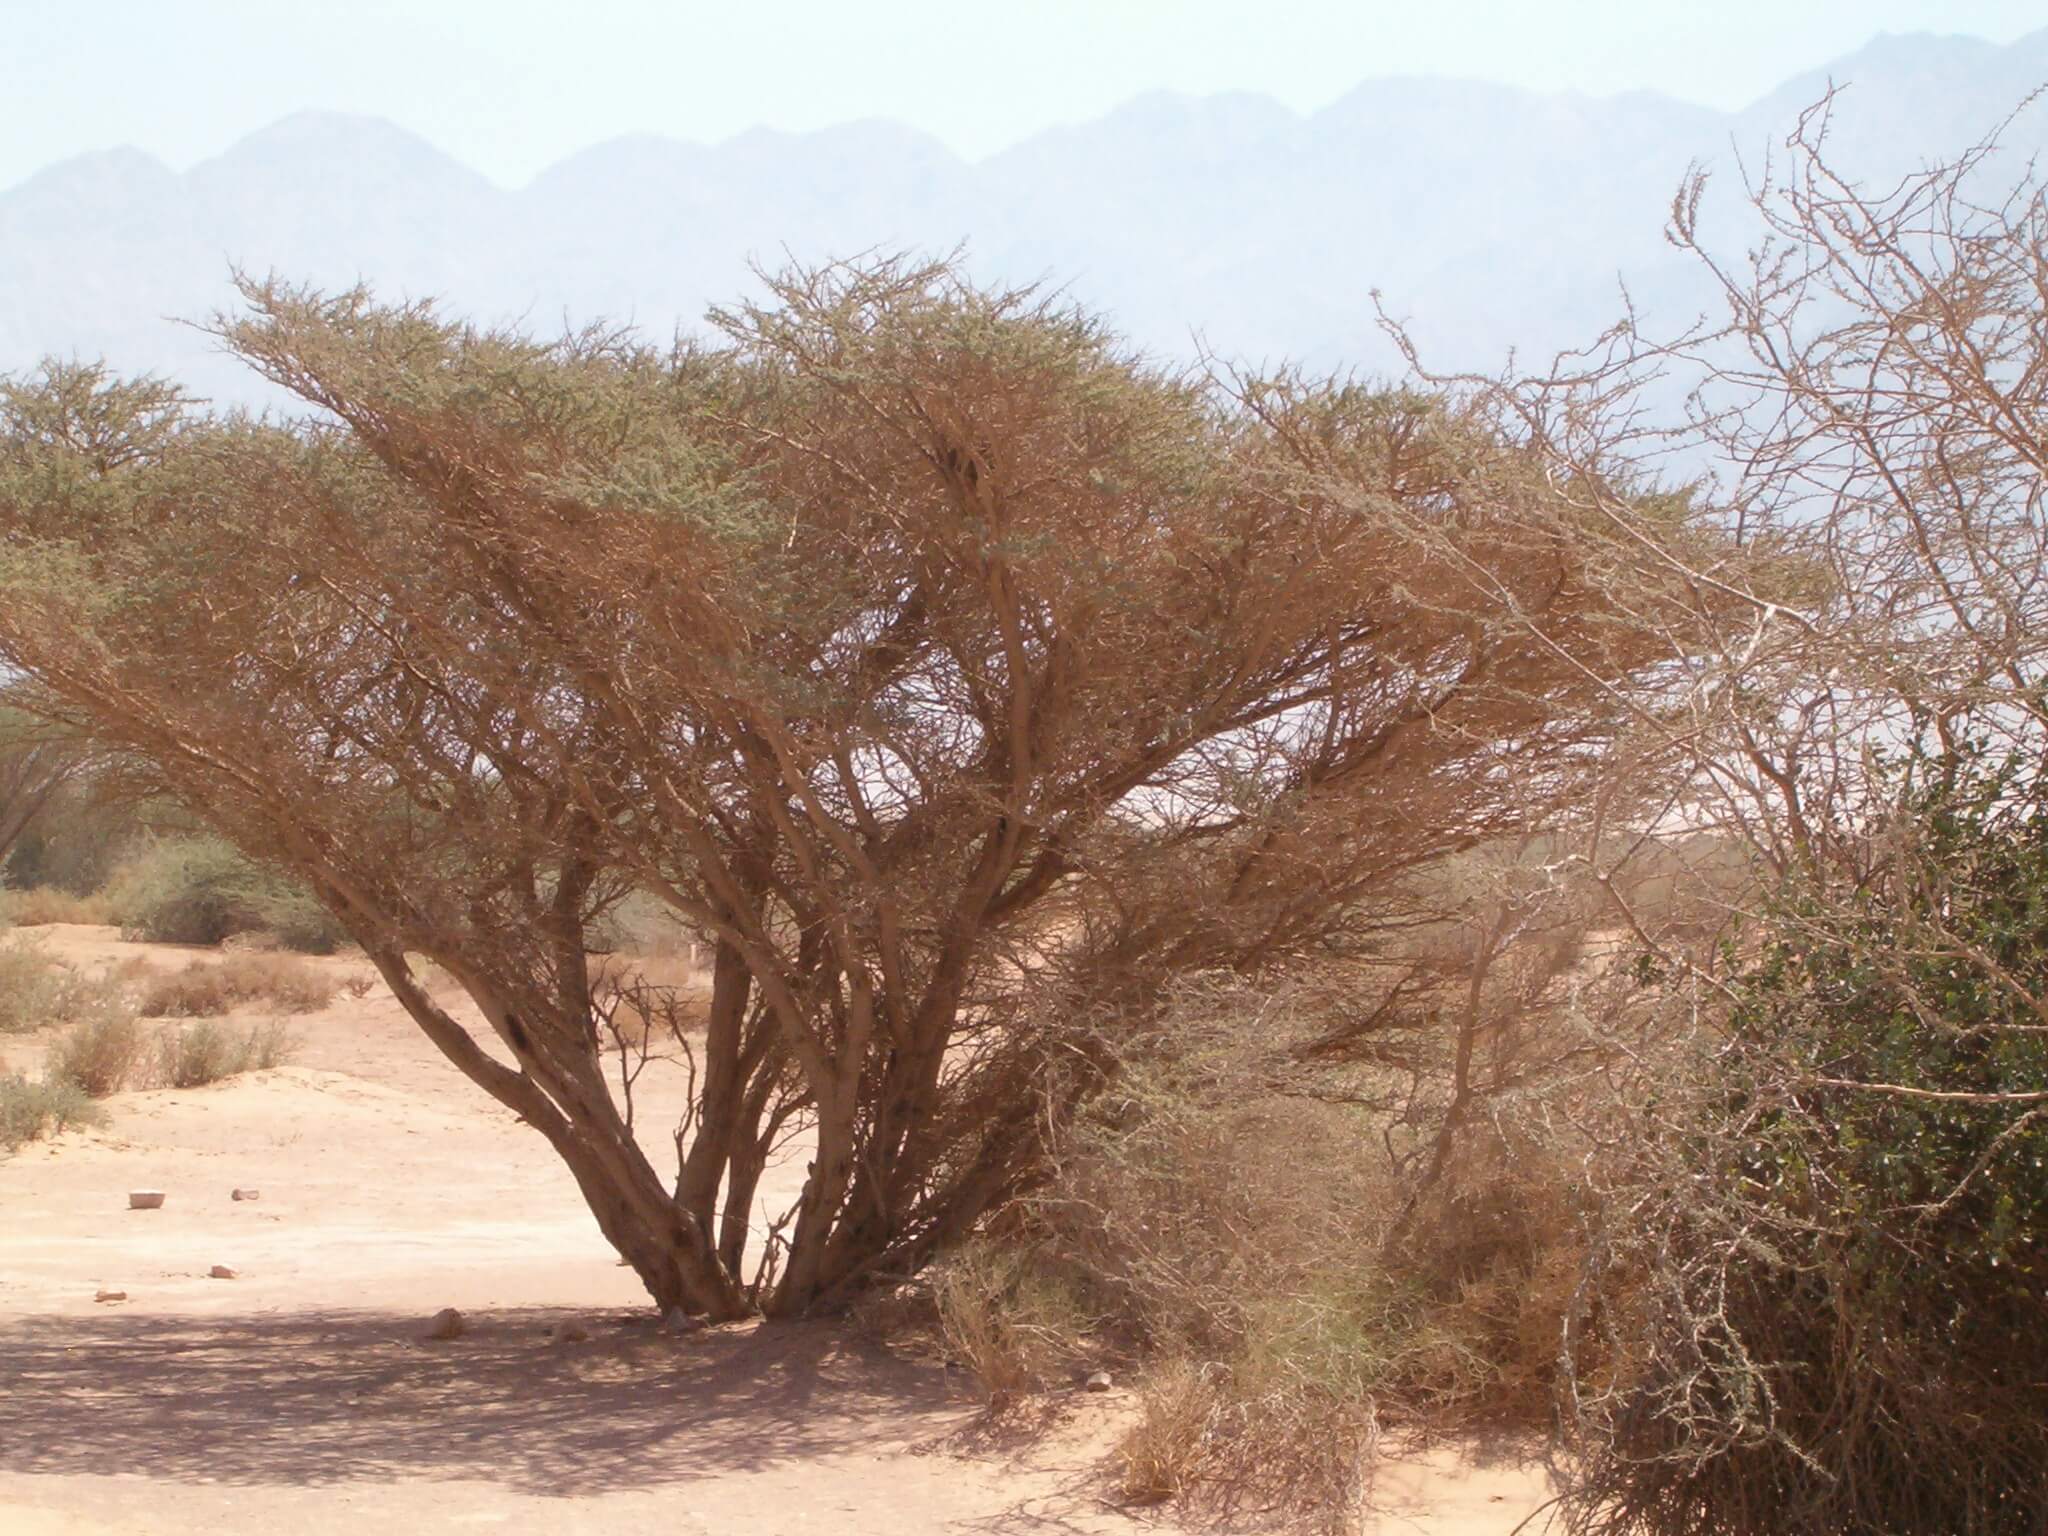 סביב עצי השיטה שמאפיינים את נופי הערבה נוצר קשר לטבע שאת ערכו קשה להעריך במונחים כלכליים. צילום: י.ש. at Hebrew Wikipedia, CC BY-SA 3.0